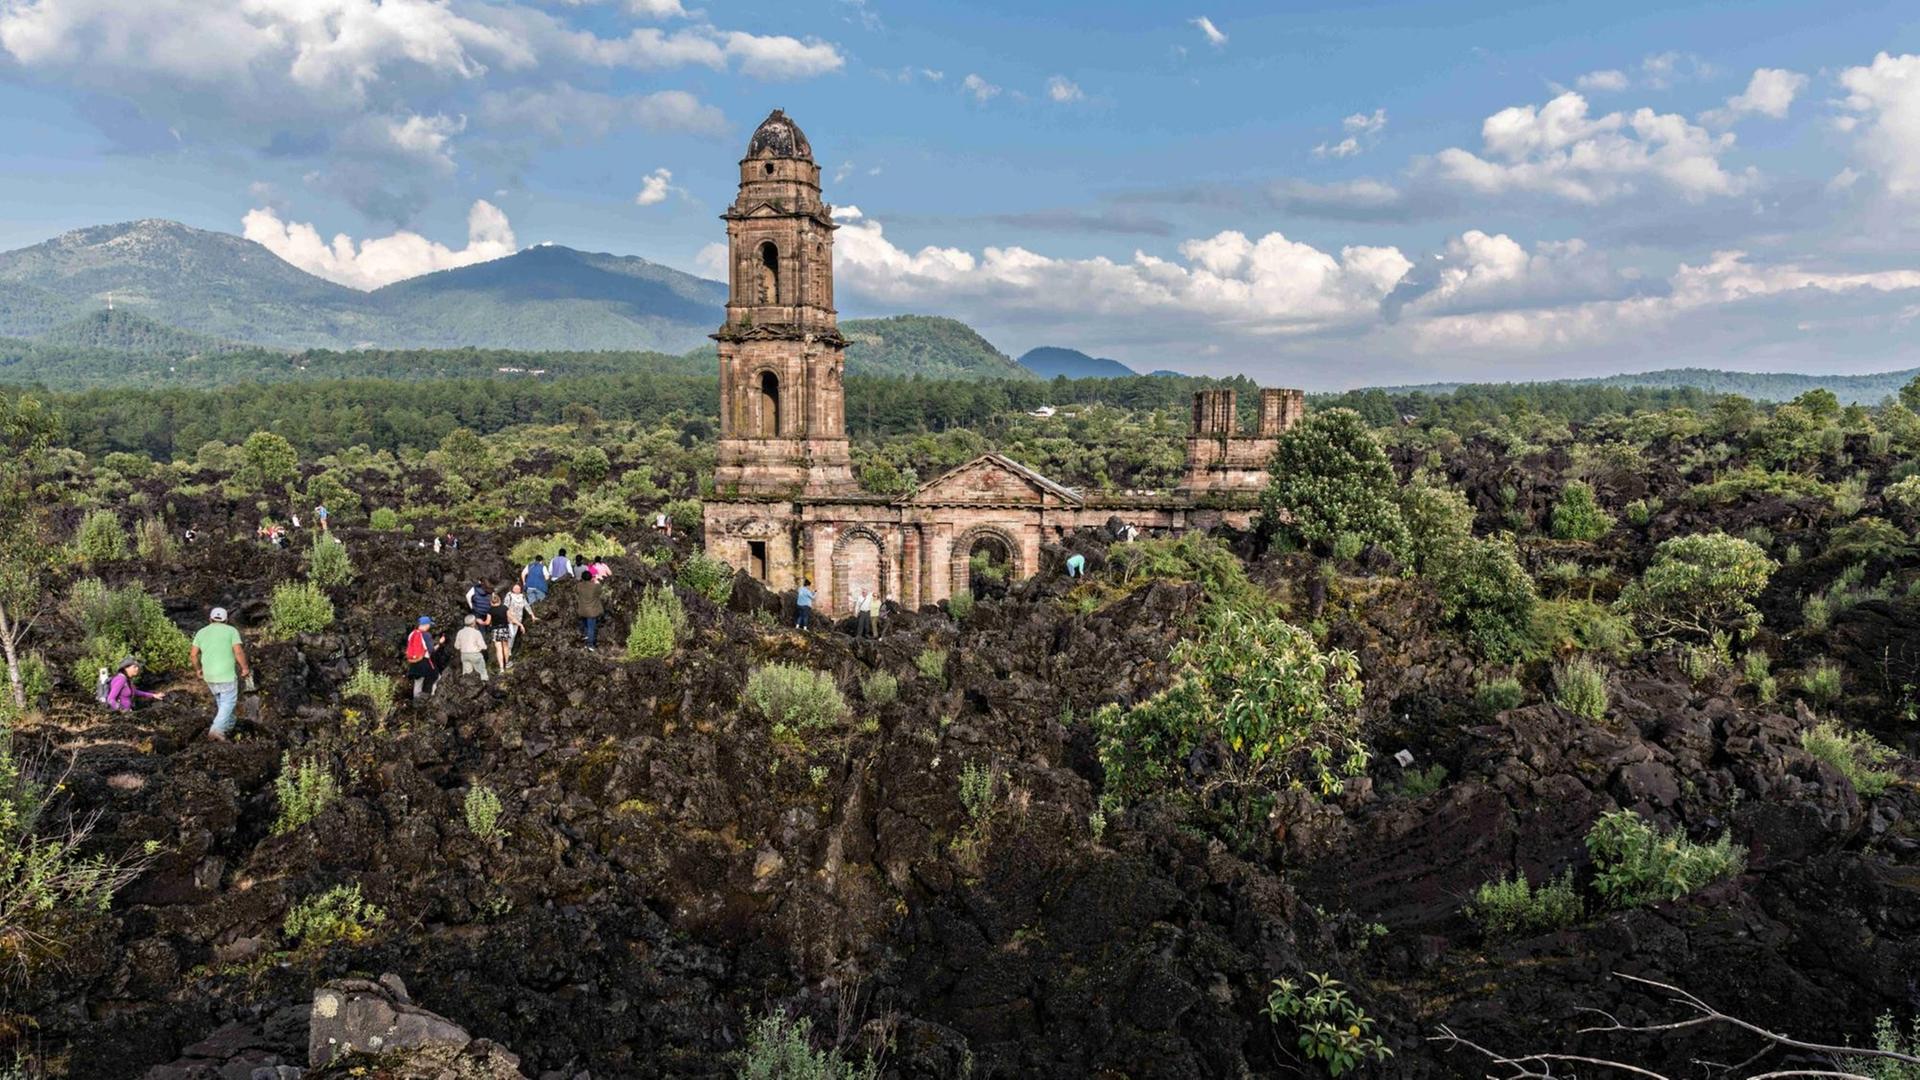 San Juan Parangaricutiro, Michoacan, Mexiko: Touristen klettern im erstarrten Lavagestein, das die Runinen der Kirche von San Juan Parangaricutiro umgibt. Die Kirche ist das einzige Bauwerk, das nach dem achtjährigen Ausbruch des Vulkans Paricutin, der 1943 zwei Dörfer verschlang, übrig blieb.